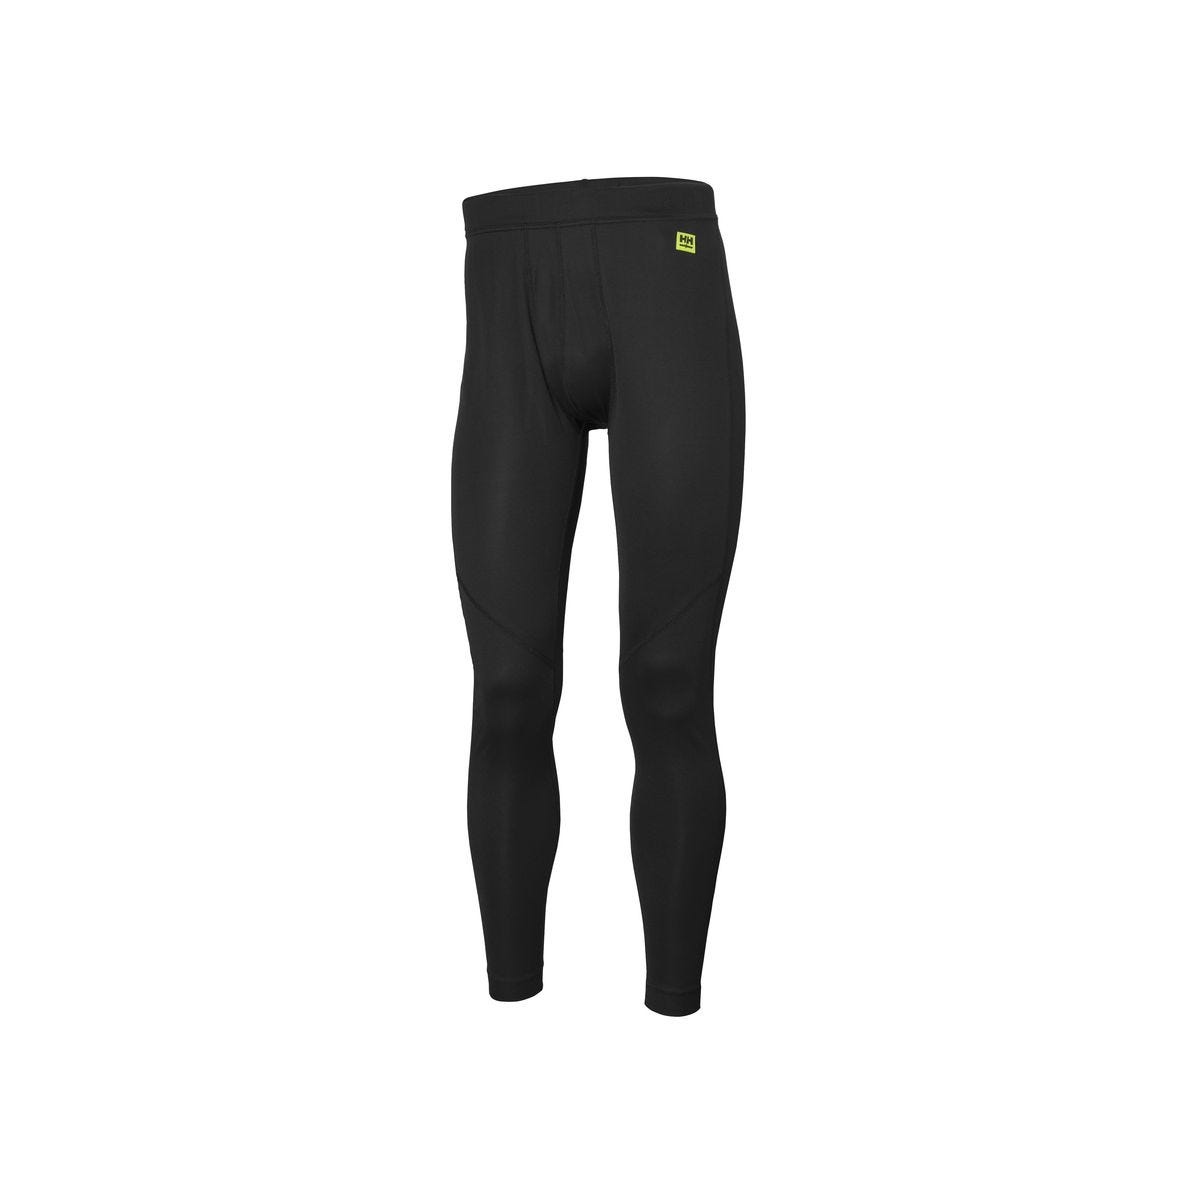 Pantalon sous-vêtement technique Lifa Noir - Helly Hansen - Taille L 0